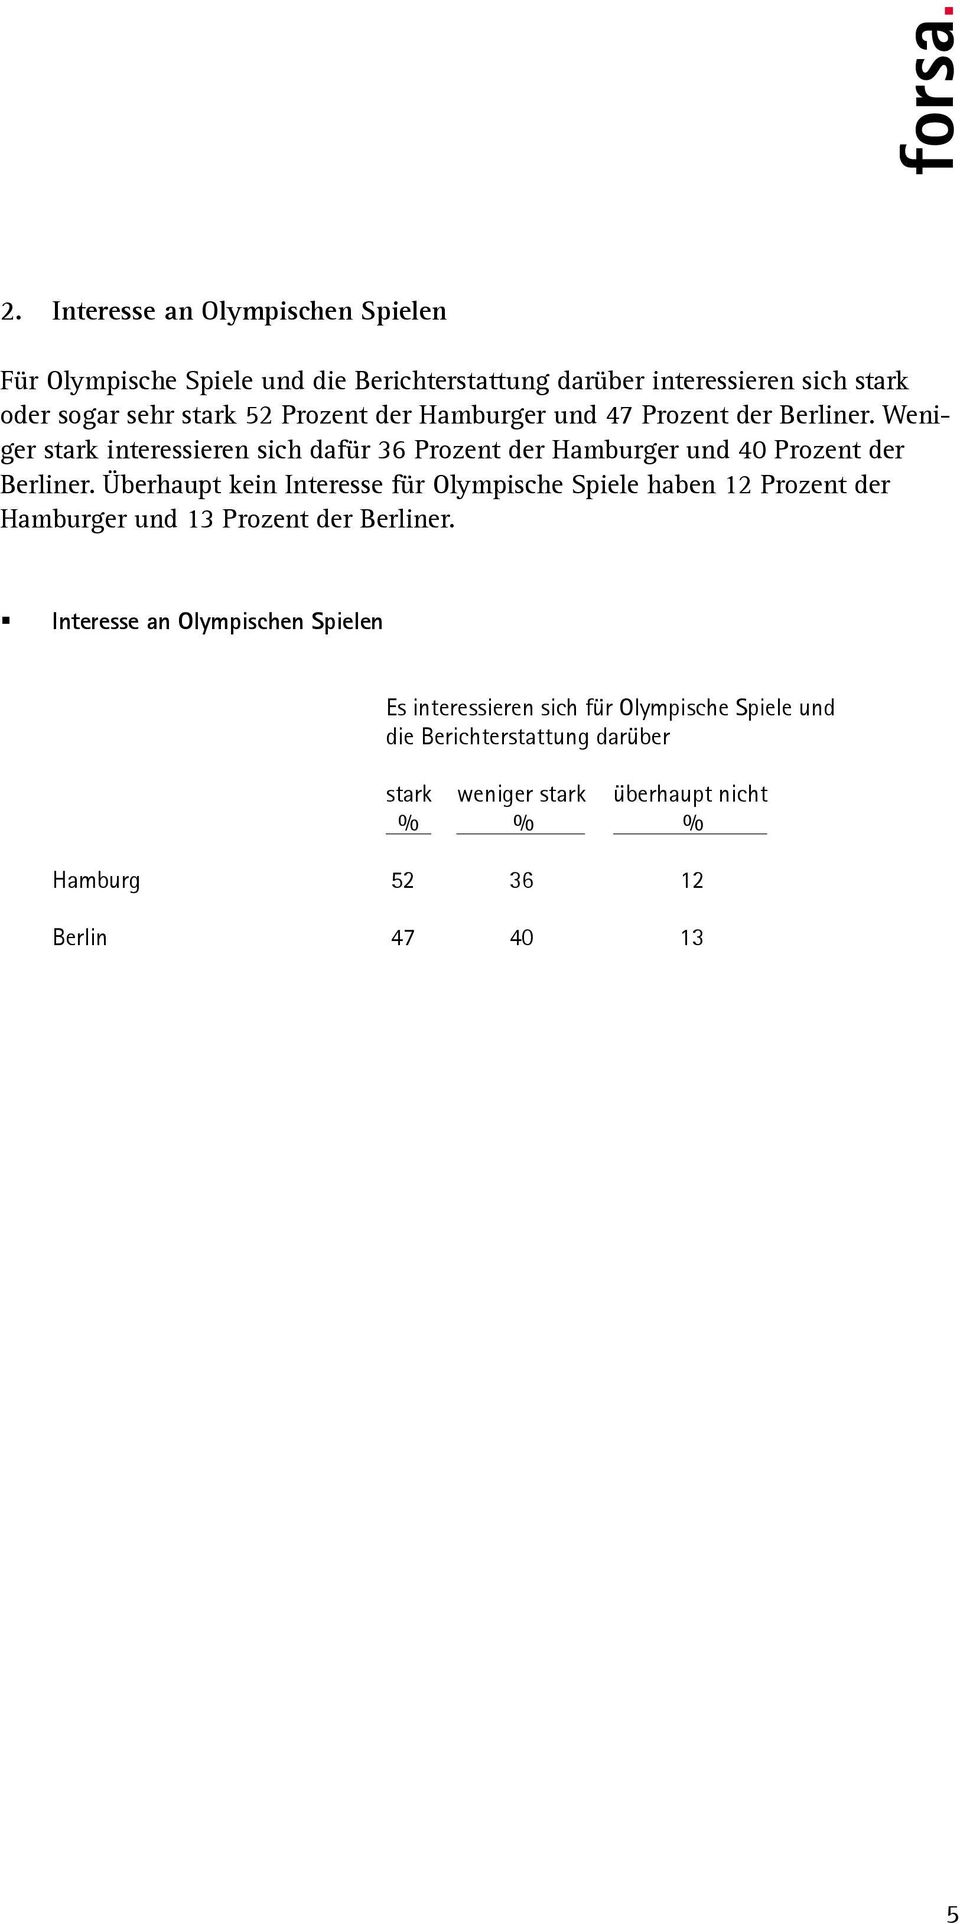 Überhaupt kein Interesse für Olympische Spiele haben 12 Prozent der Hamburger und 13 Prozent der Berliner.